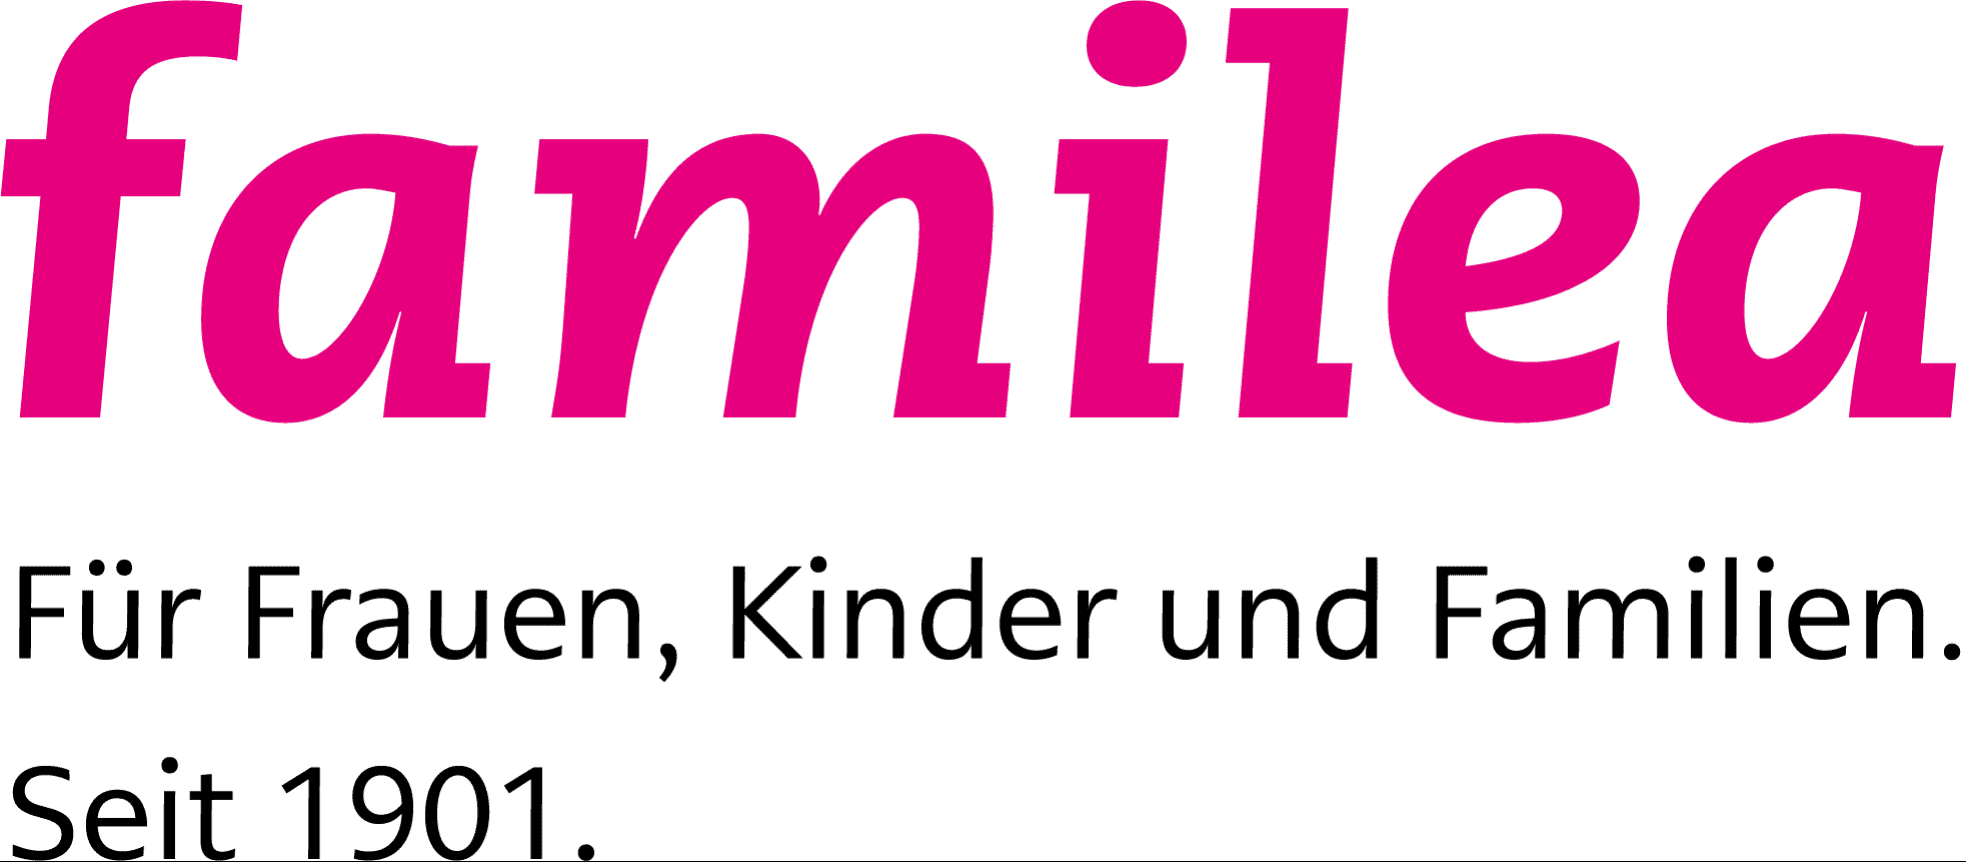 familea - Für Frauen, Kinder und Familien. Seit 1901.